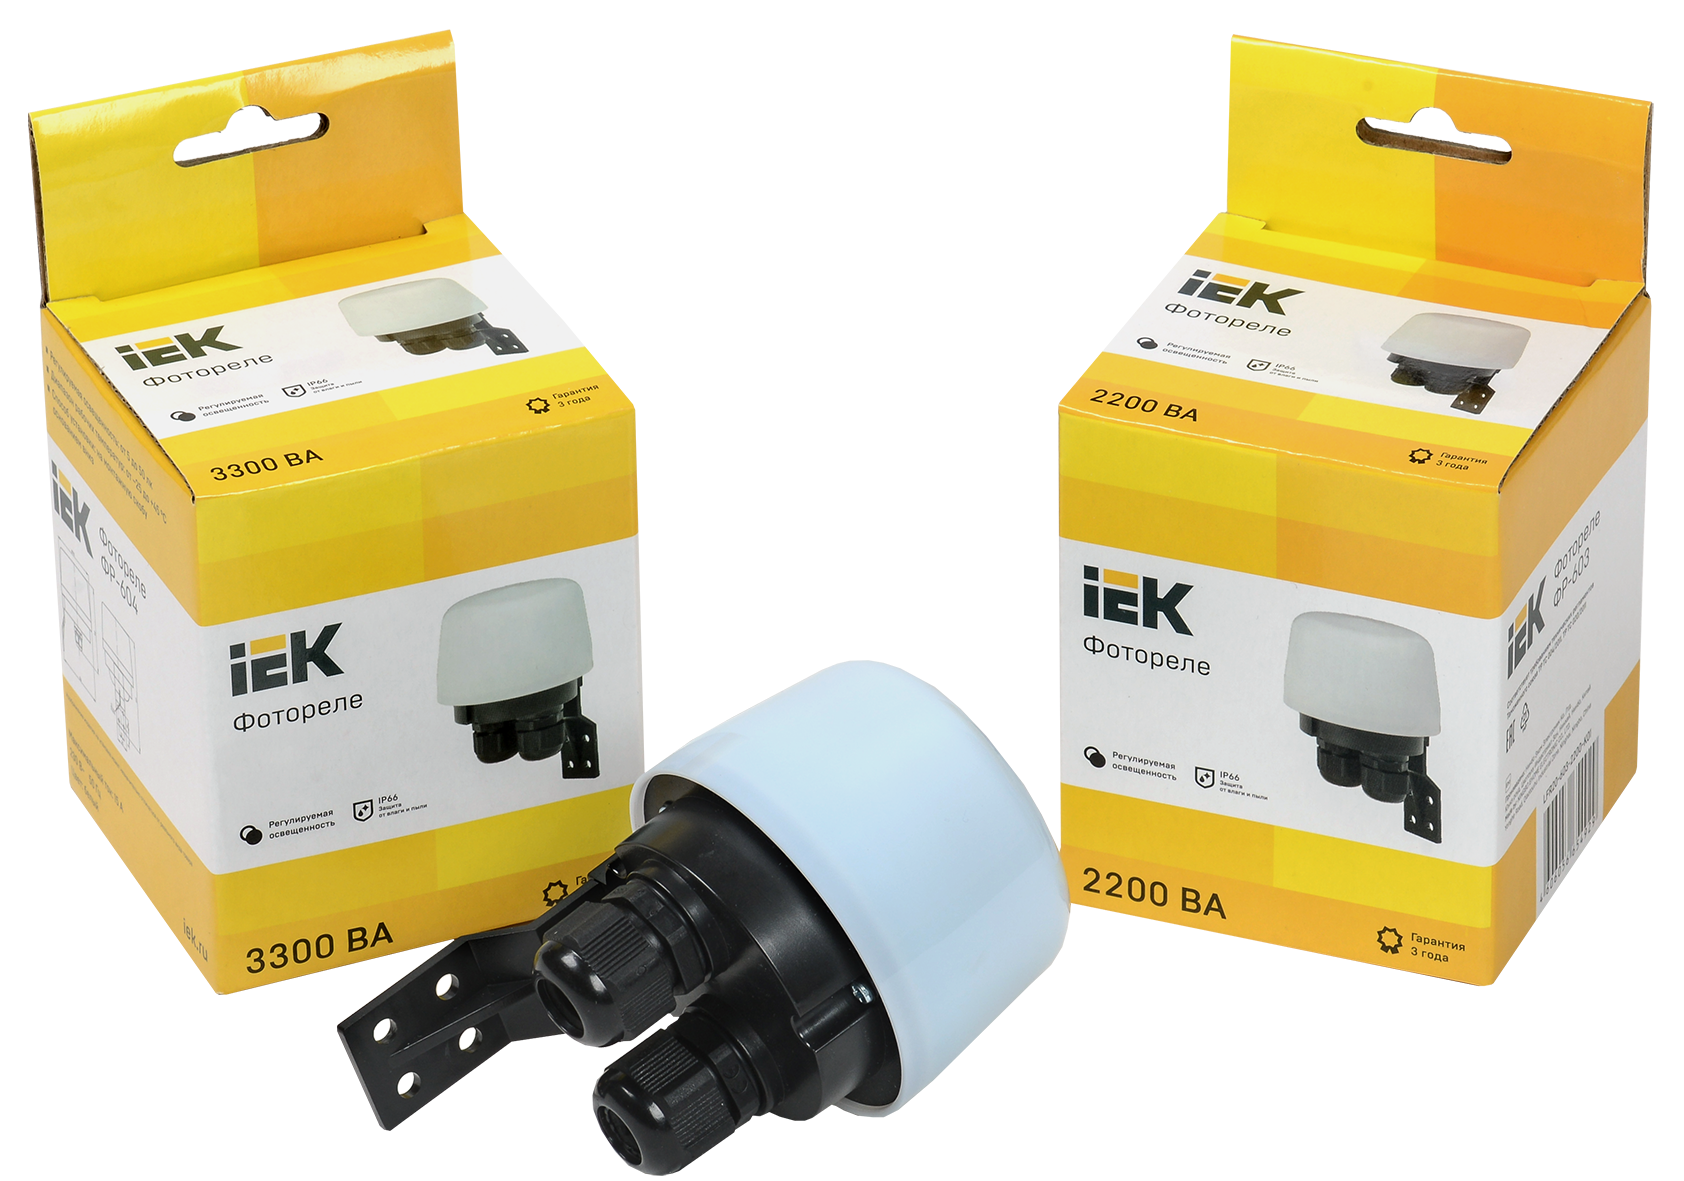 Новинка - фотореле IEK® с высокой степенью защиты от пыли и влаги IP66